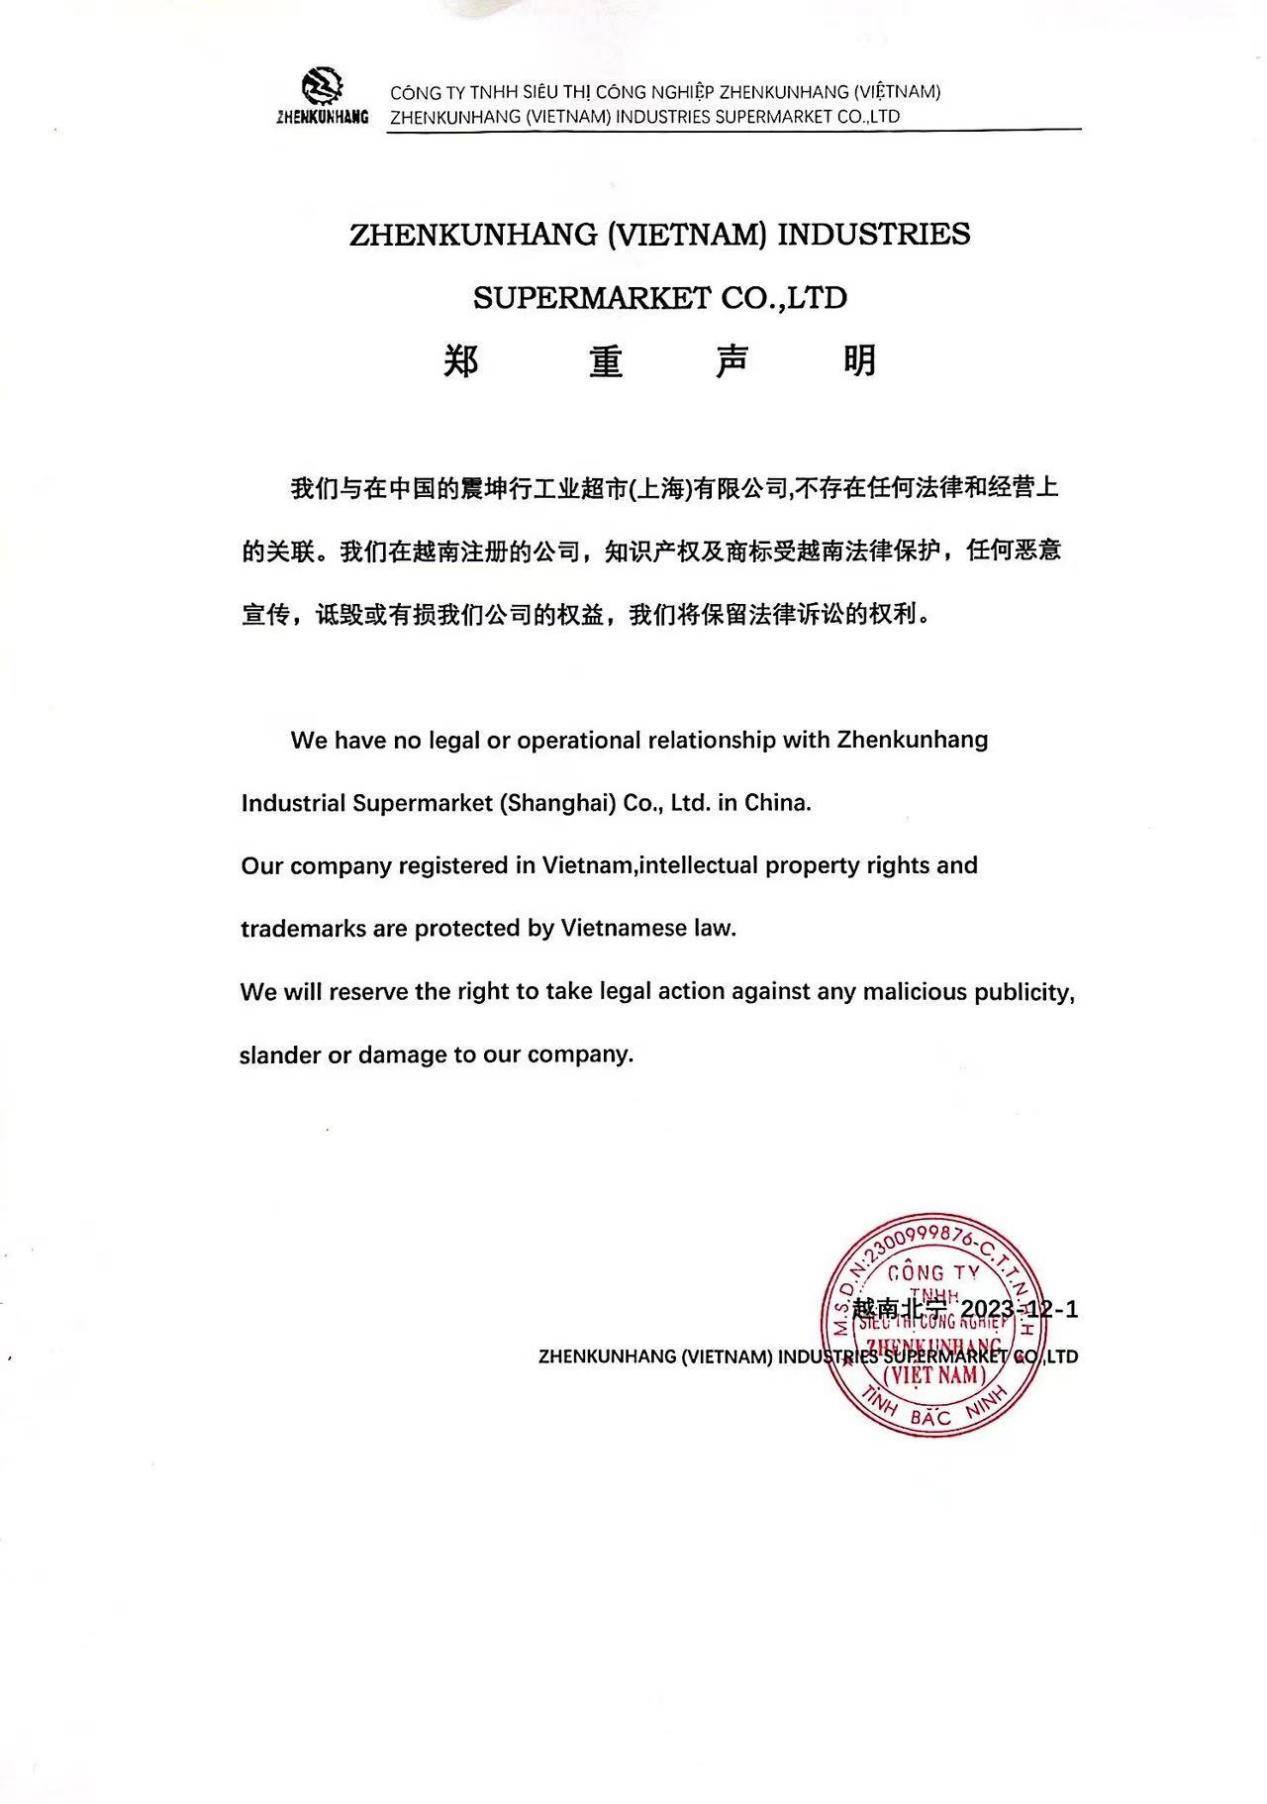 ZhenkunhangVN越南有限公司发布声明：与中国坤震行工业超市不存在关联